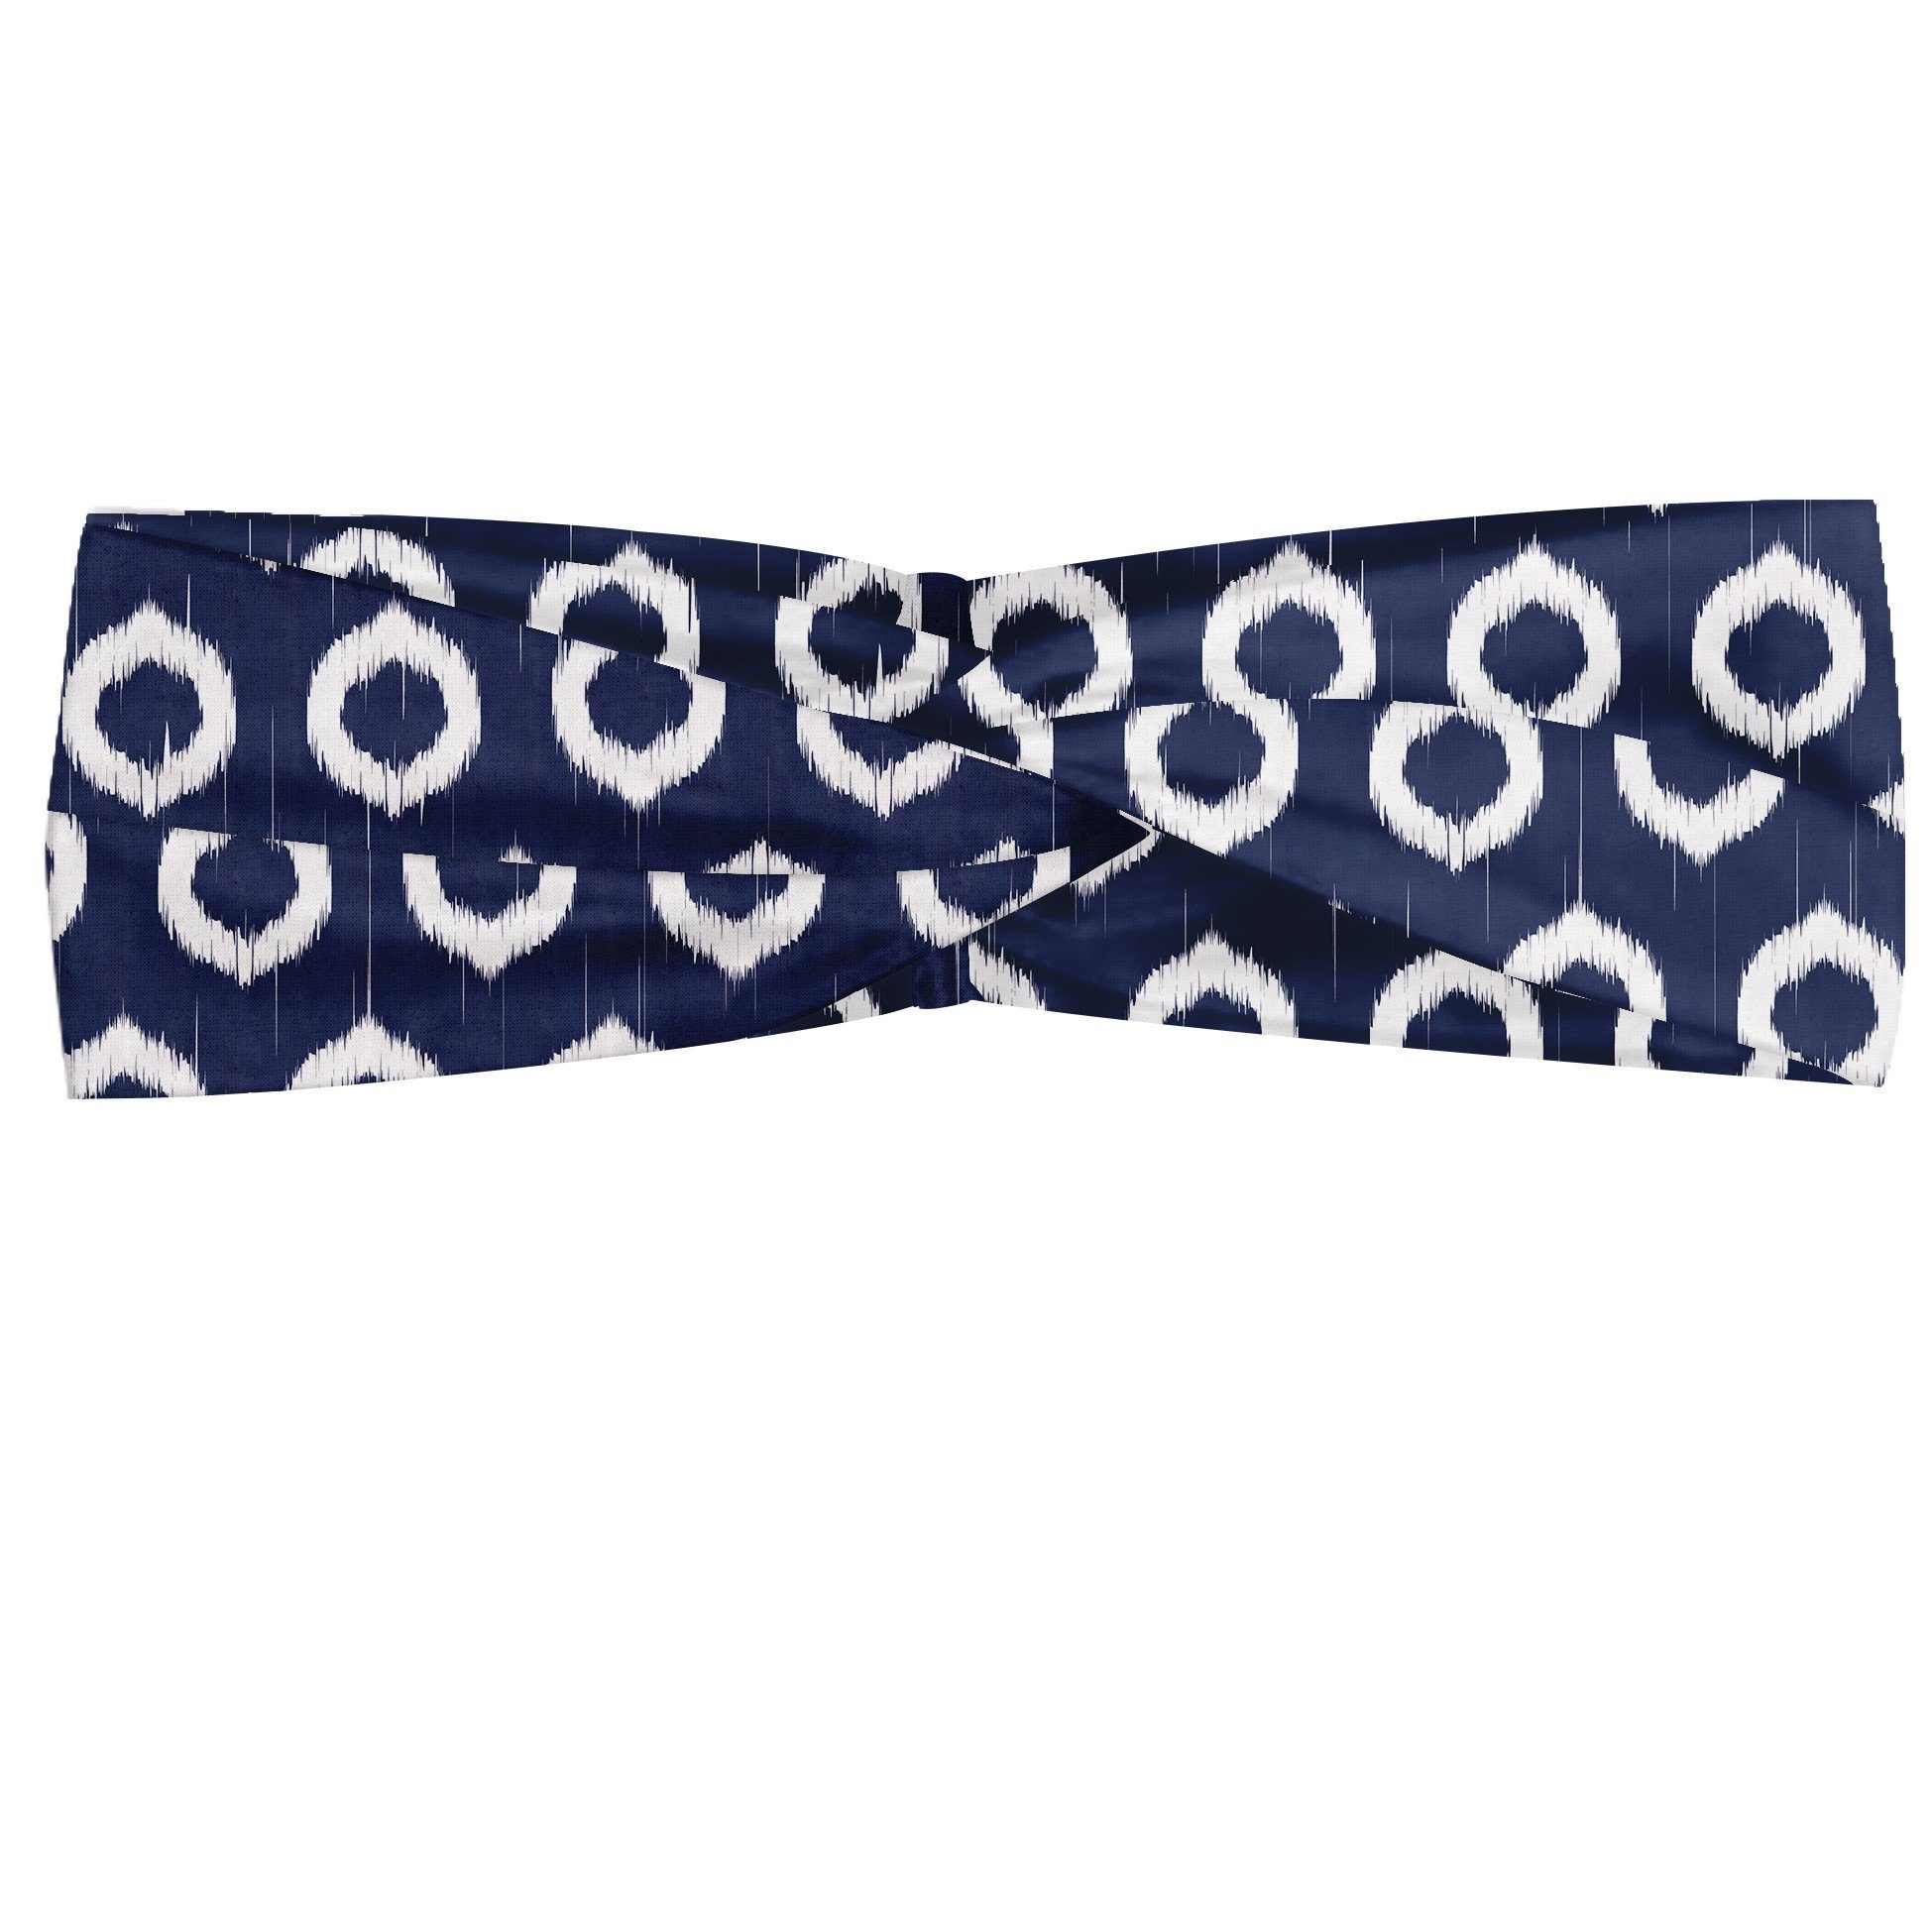 Abakuhaus Stirnband Elastisch und Angenehme alltags accessories Navy blau Grunge Sketchy Entwurf